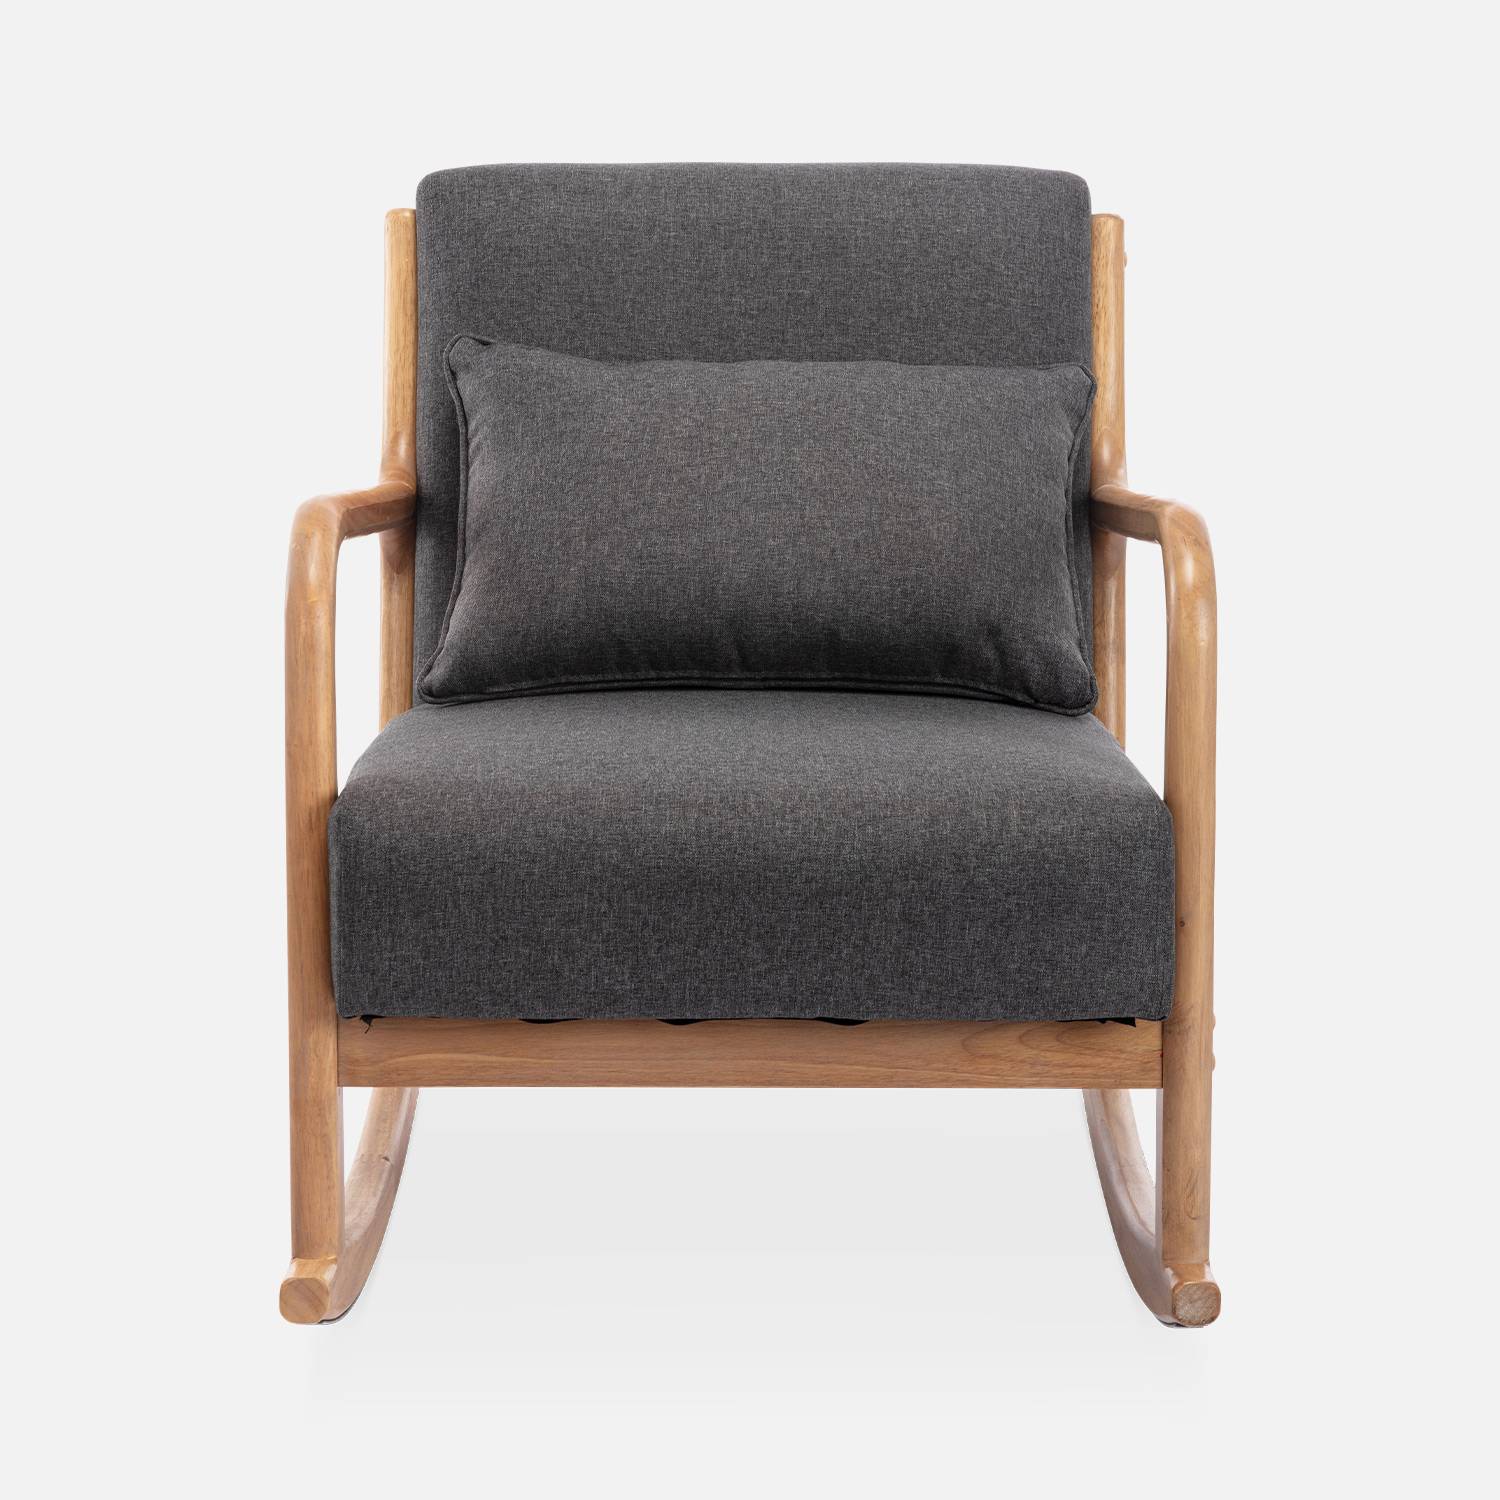 Cadeira de baloiço de design em madeira e tecido, 1 assento, cadeira de baloiço escandinava, cinza Photo4